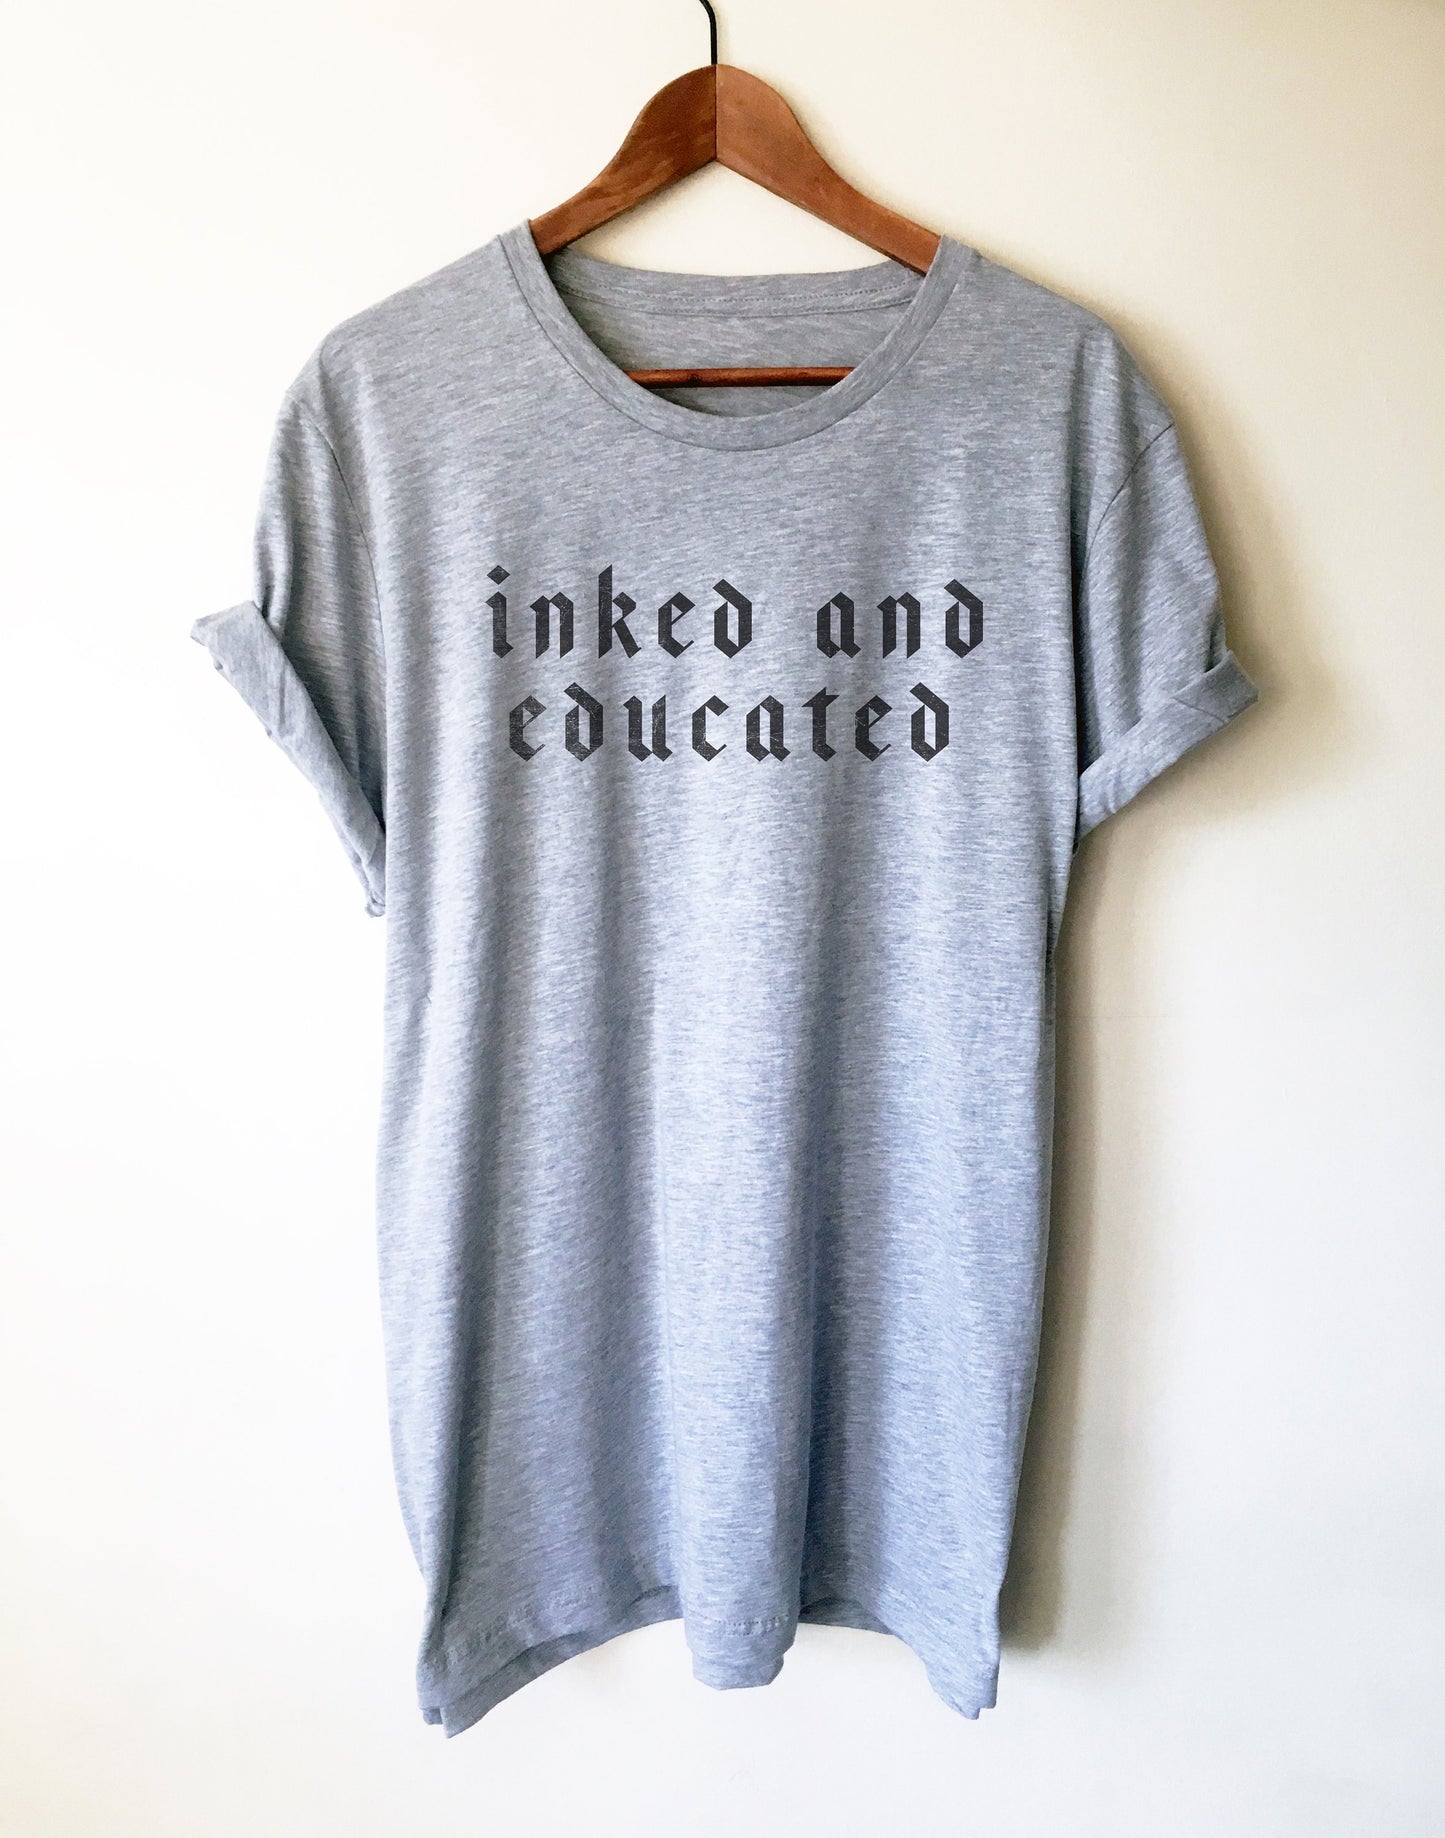 Inked And Educated Unisex Shirt -